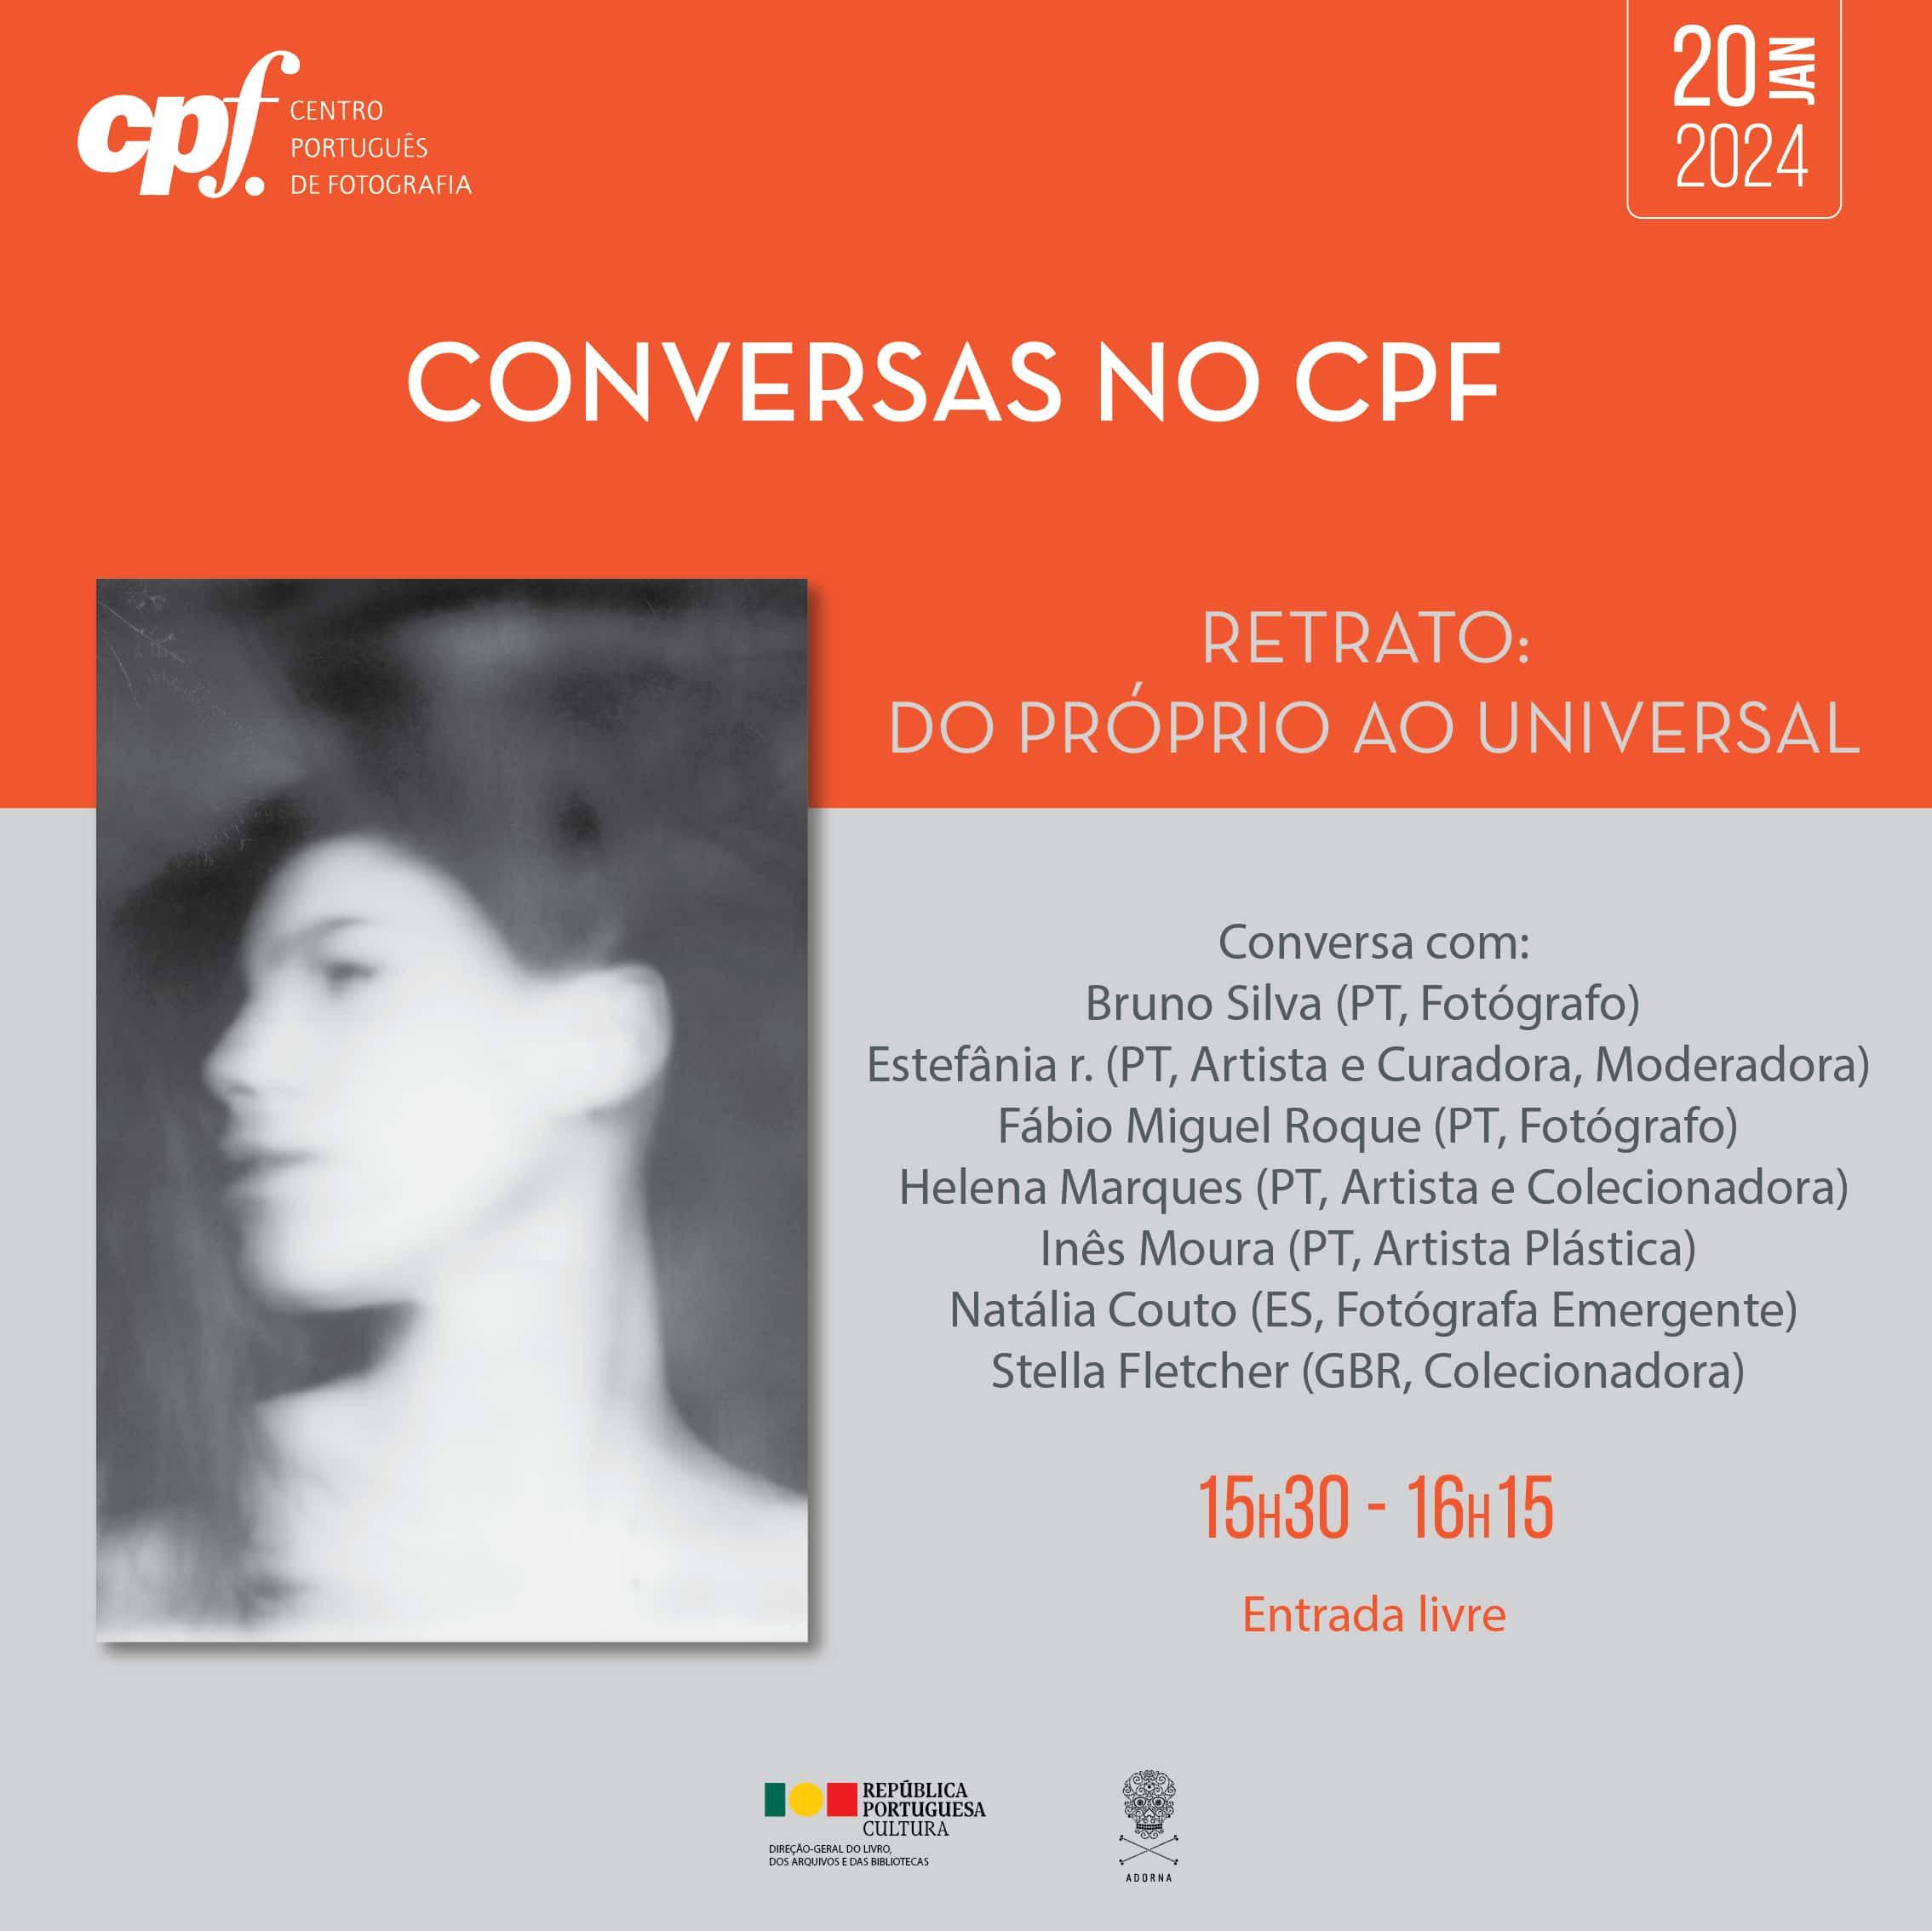 Conversas No CPF Retrato Do próprio ao universal